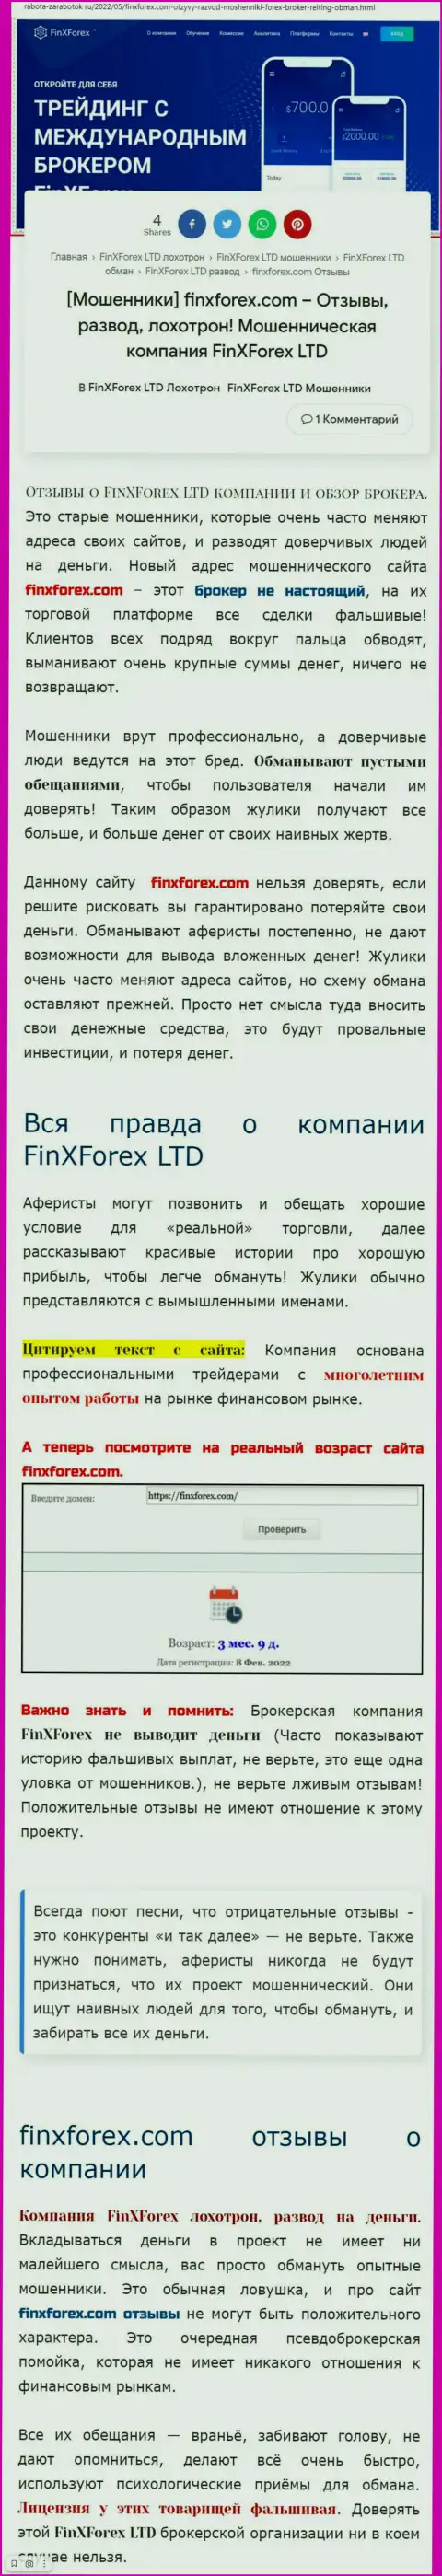 Автор обзорной статьи об FinXForex Com предупреждает, что в ФинХФорекс ЛТД мошенничают